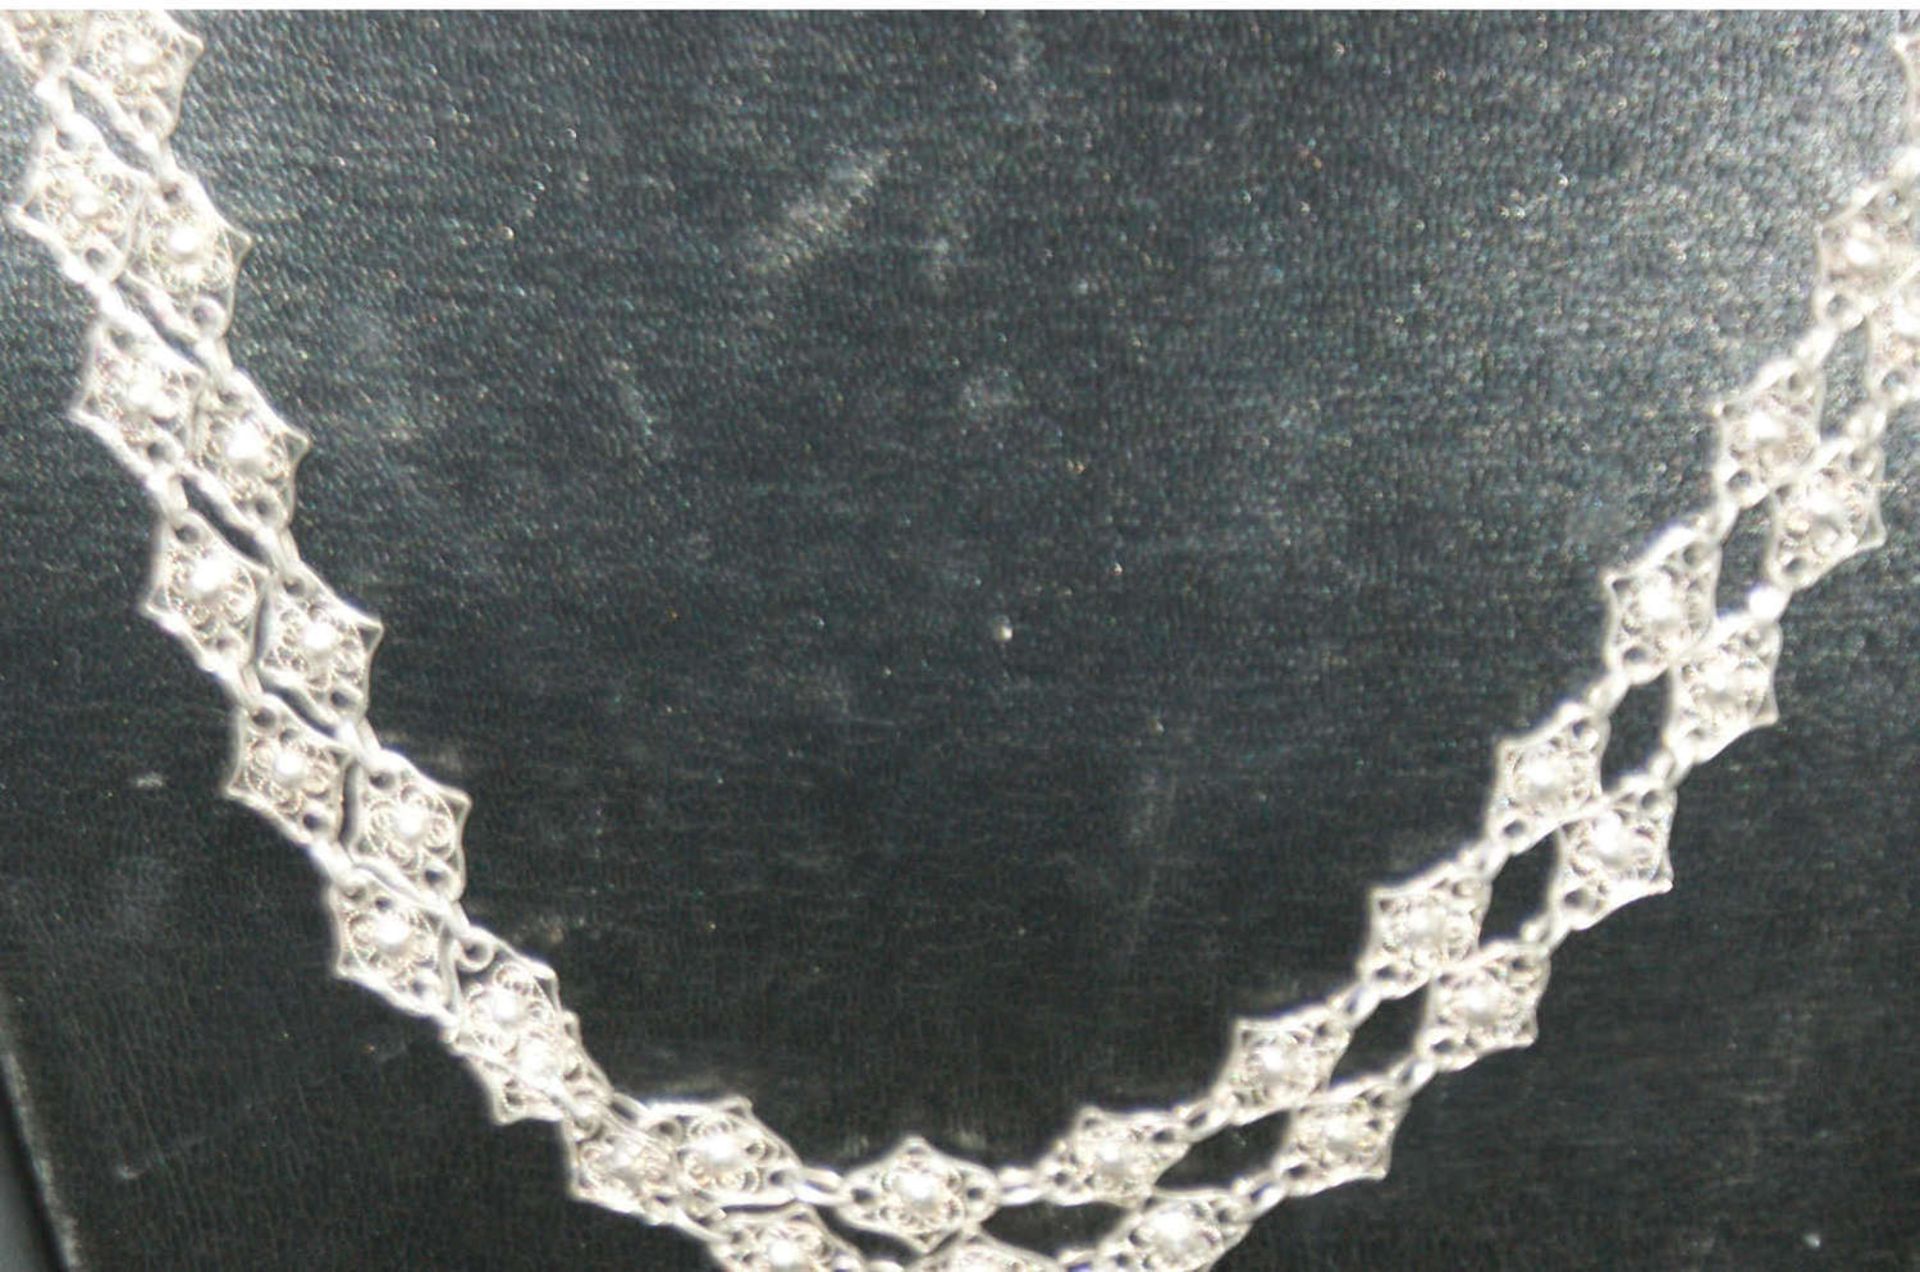 Trachtenkette, Silber, 3-reihig, tolle Optik. Gewicht ca. 40,4 gr. - Bild 3 aus 3